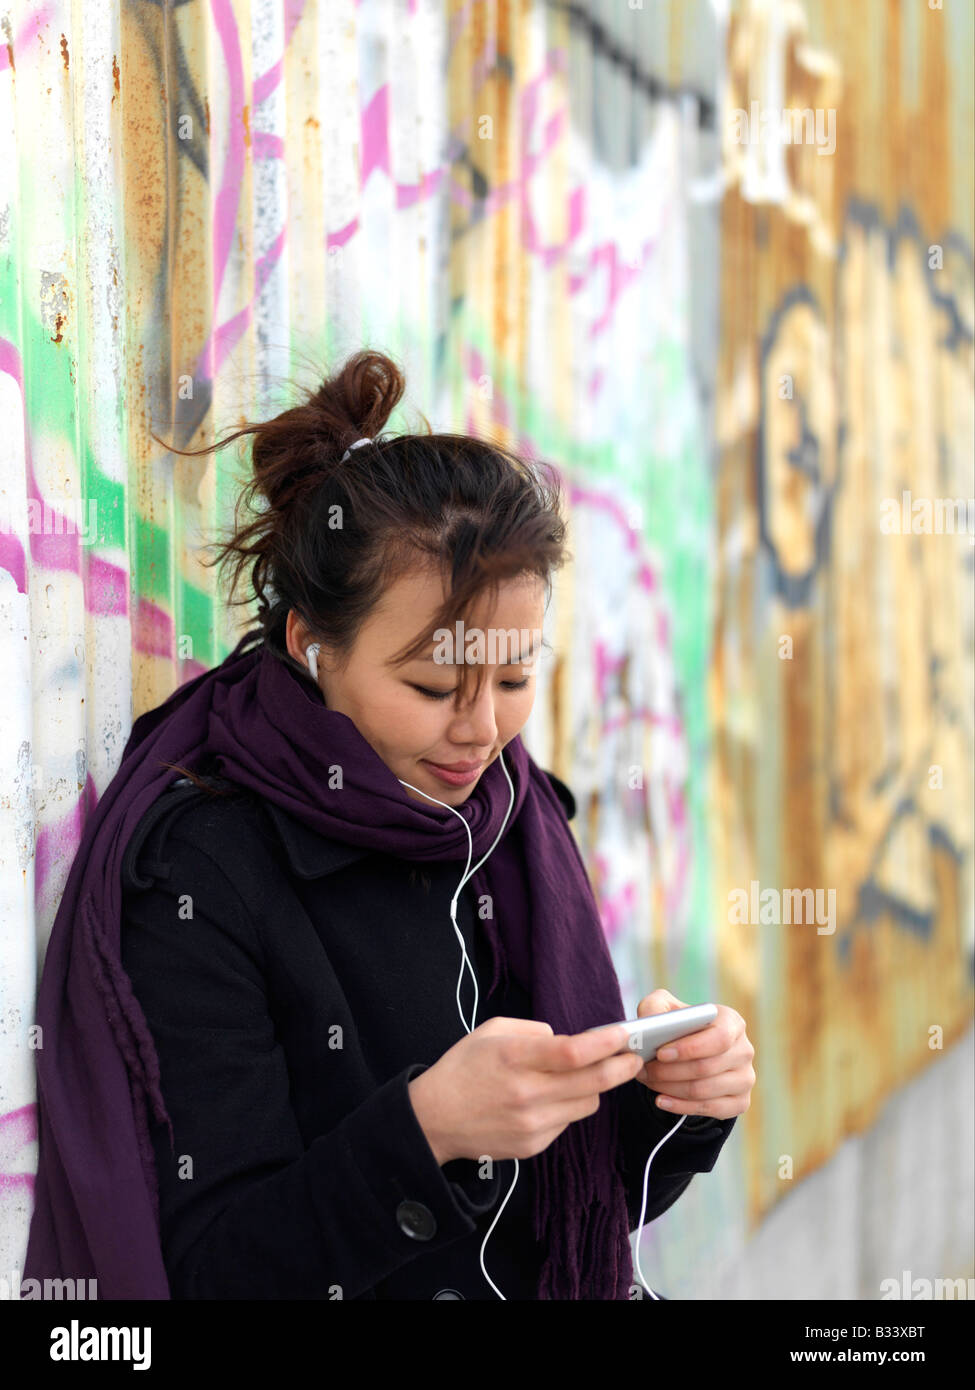 Eine junge Frau trägt einen Mantel hört Musik auf ihrem Mobiltelefon stehend gegen eine Wand graffitied Stockfoto